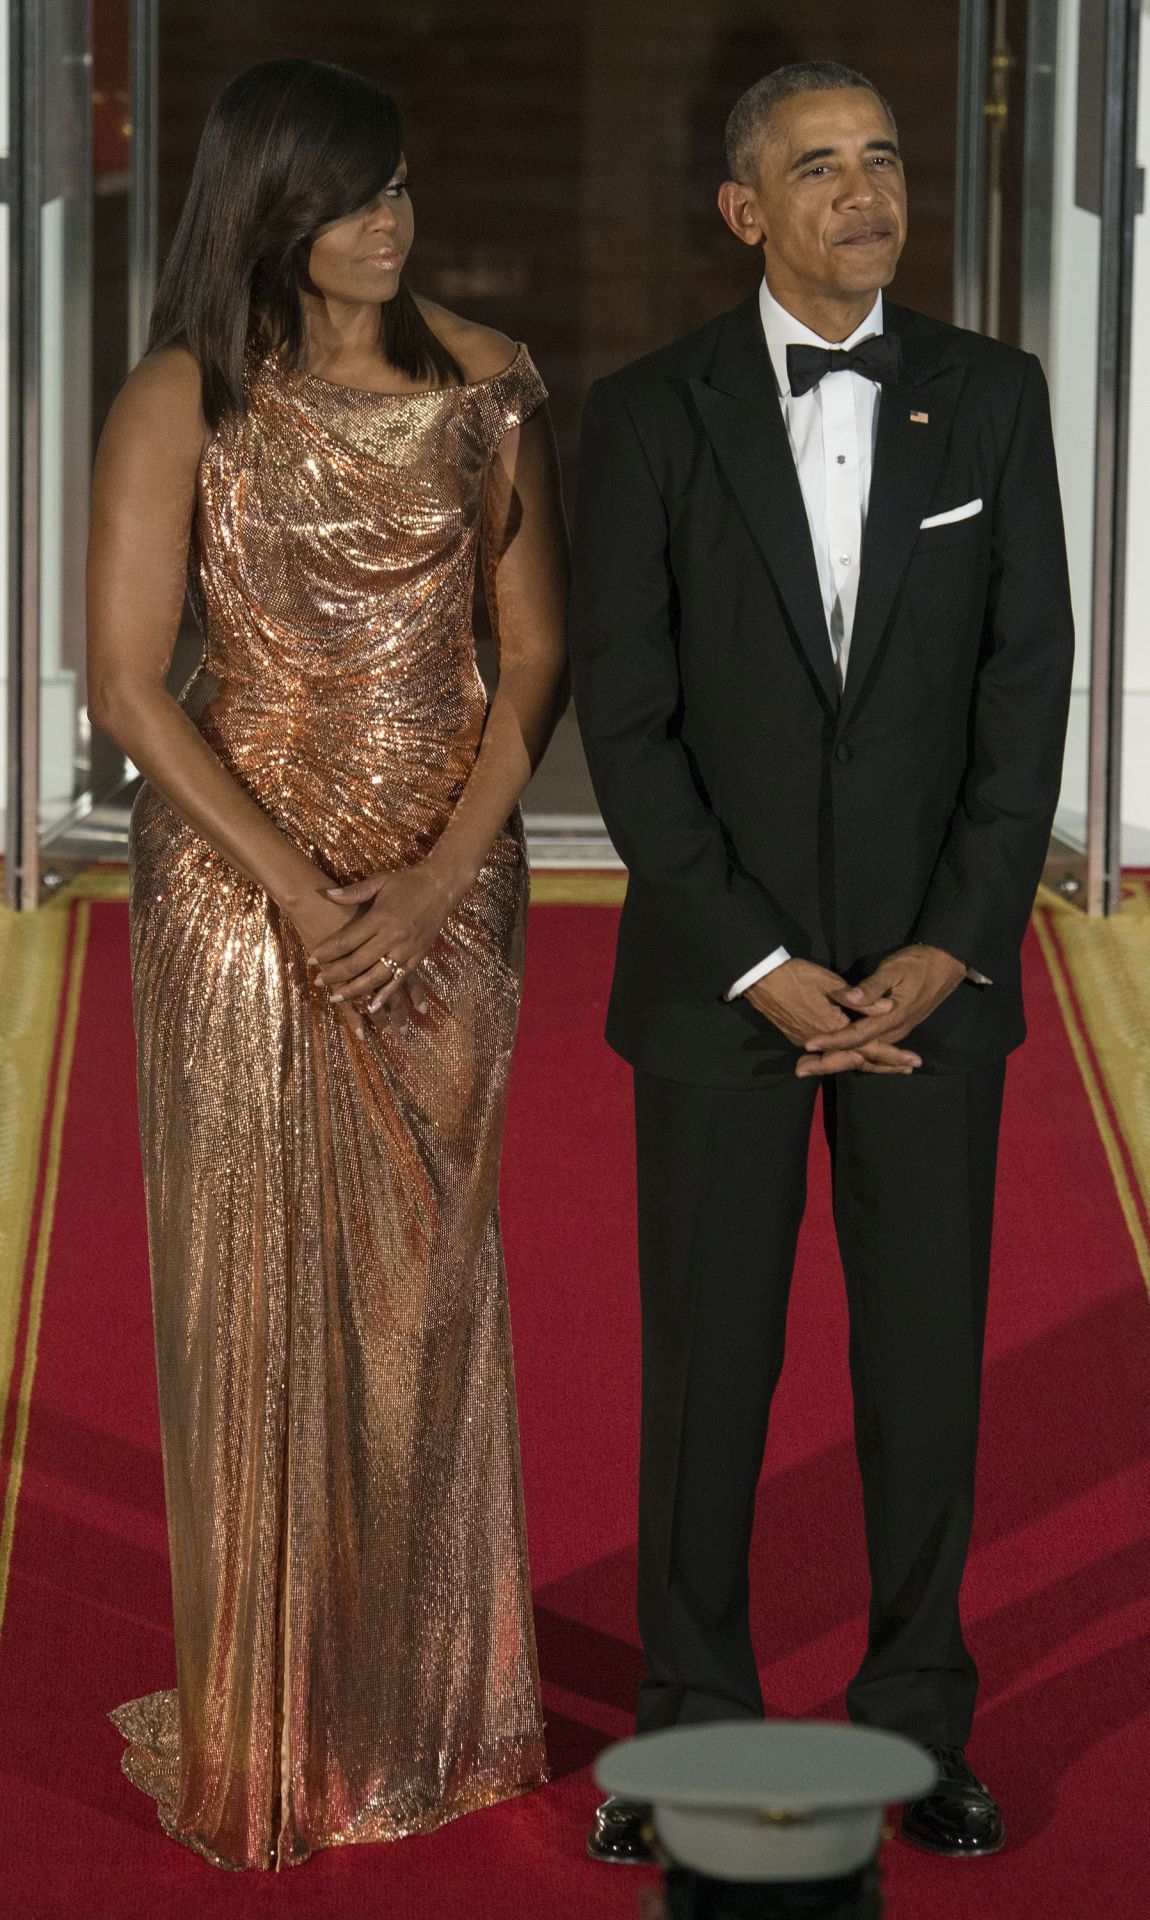 Michelle Obama ezt a gyönyörű Atelier Versace ruhát viselte az olasz miniszterelnök 2016-os látogatásakor.